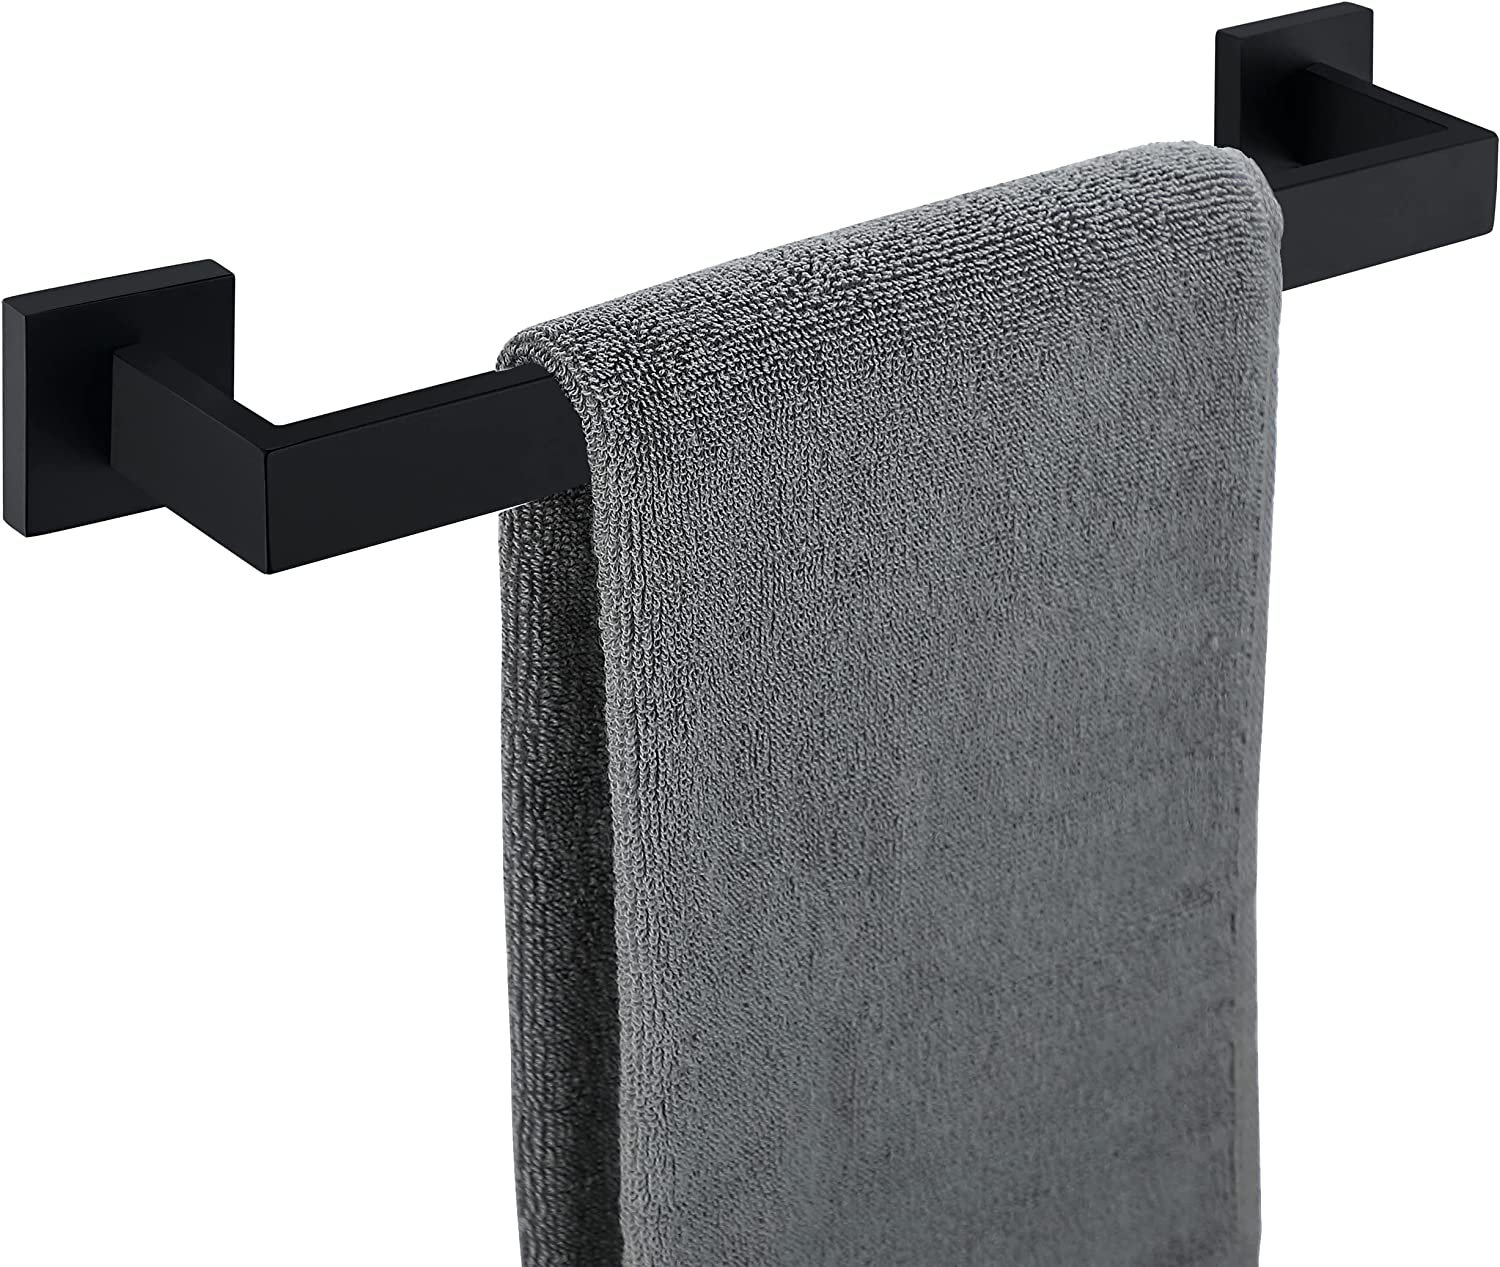 Nolimas SUS 304 Stainless Steel Towel Coat Hook 2 Packs & Reviews